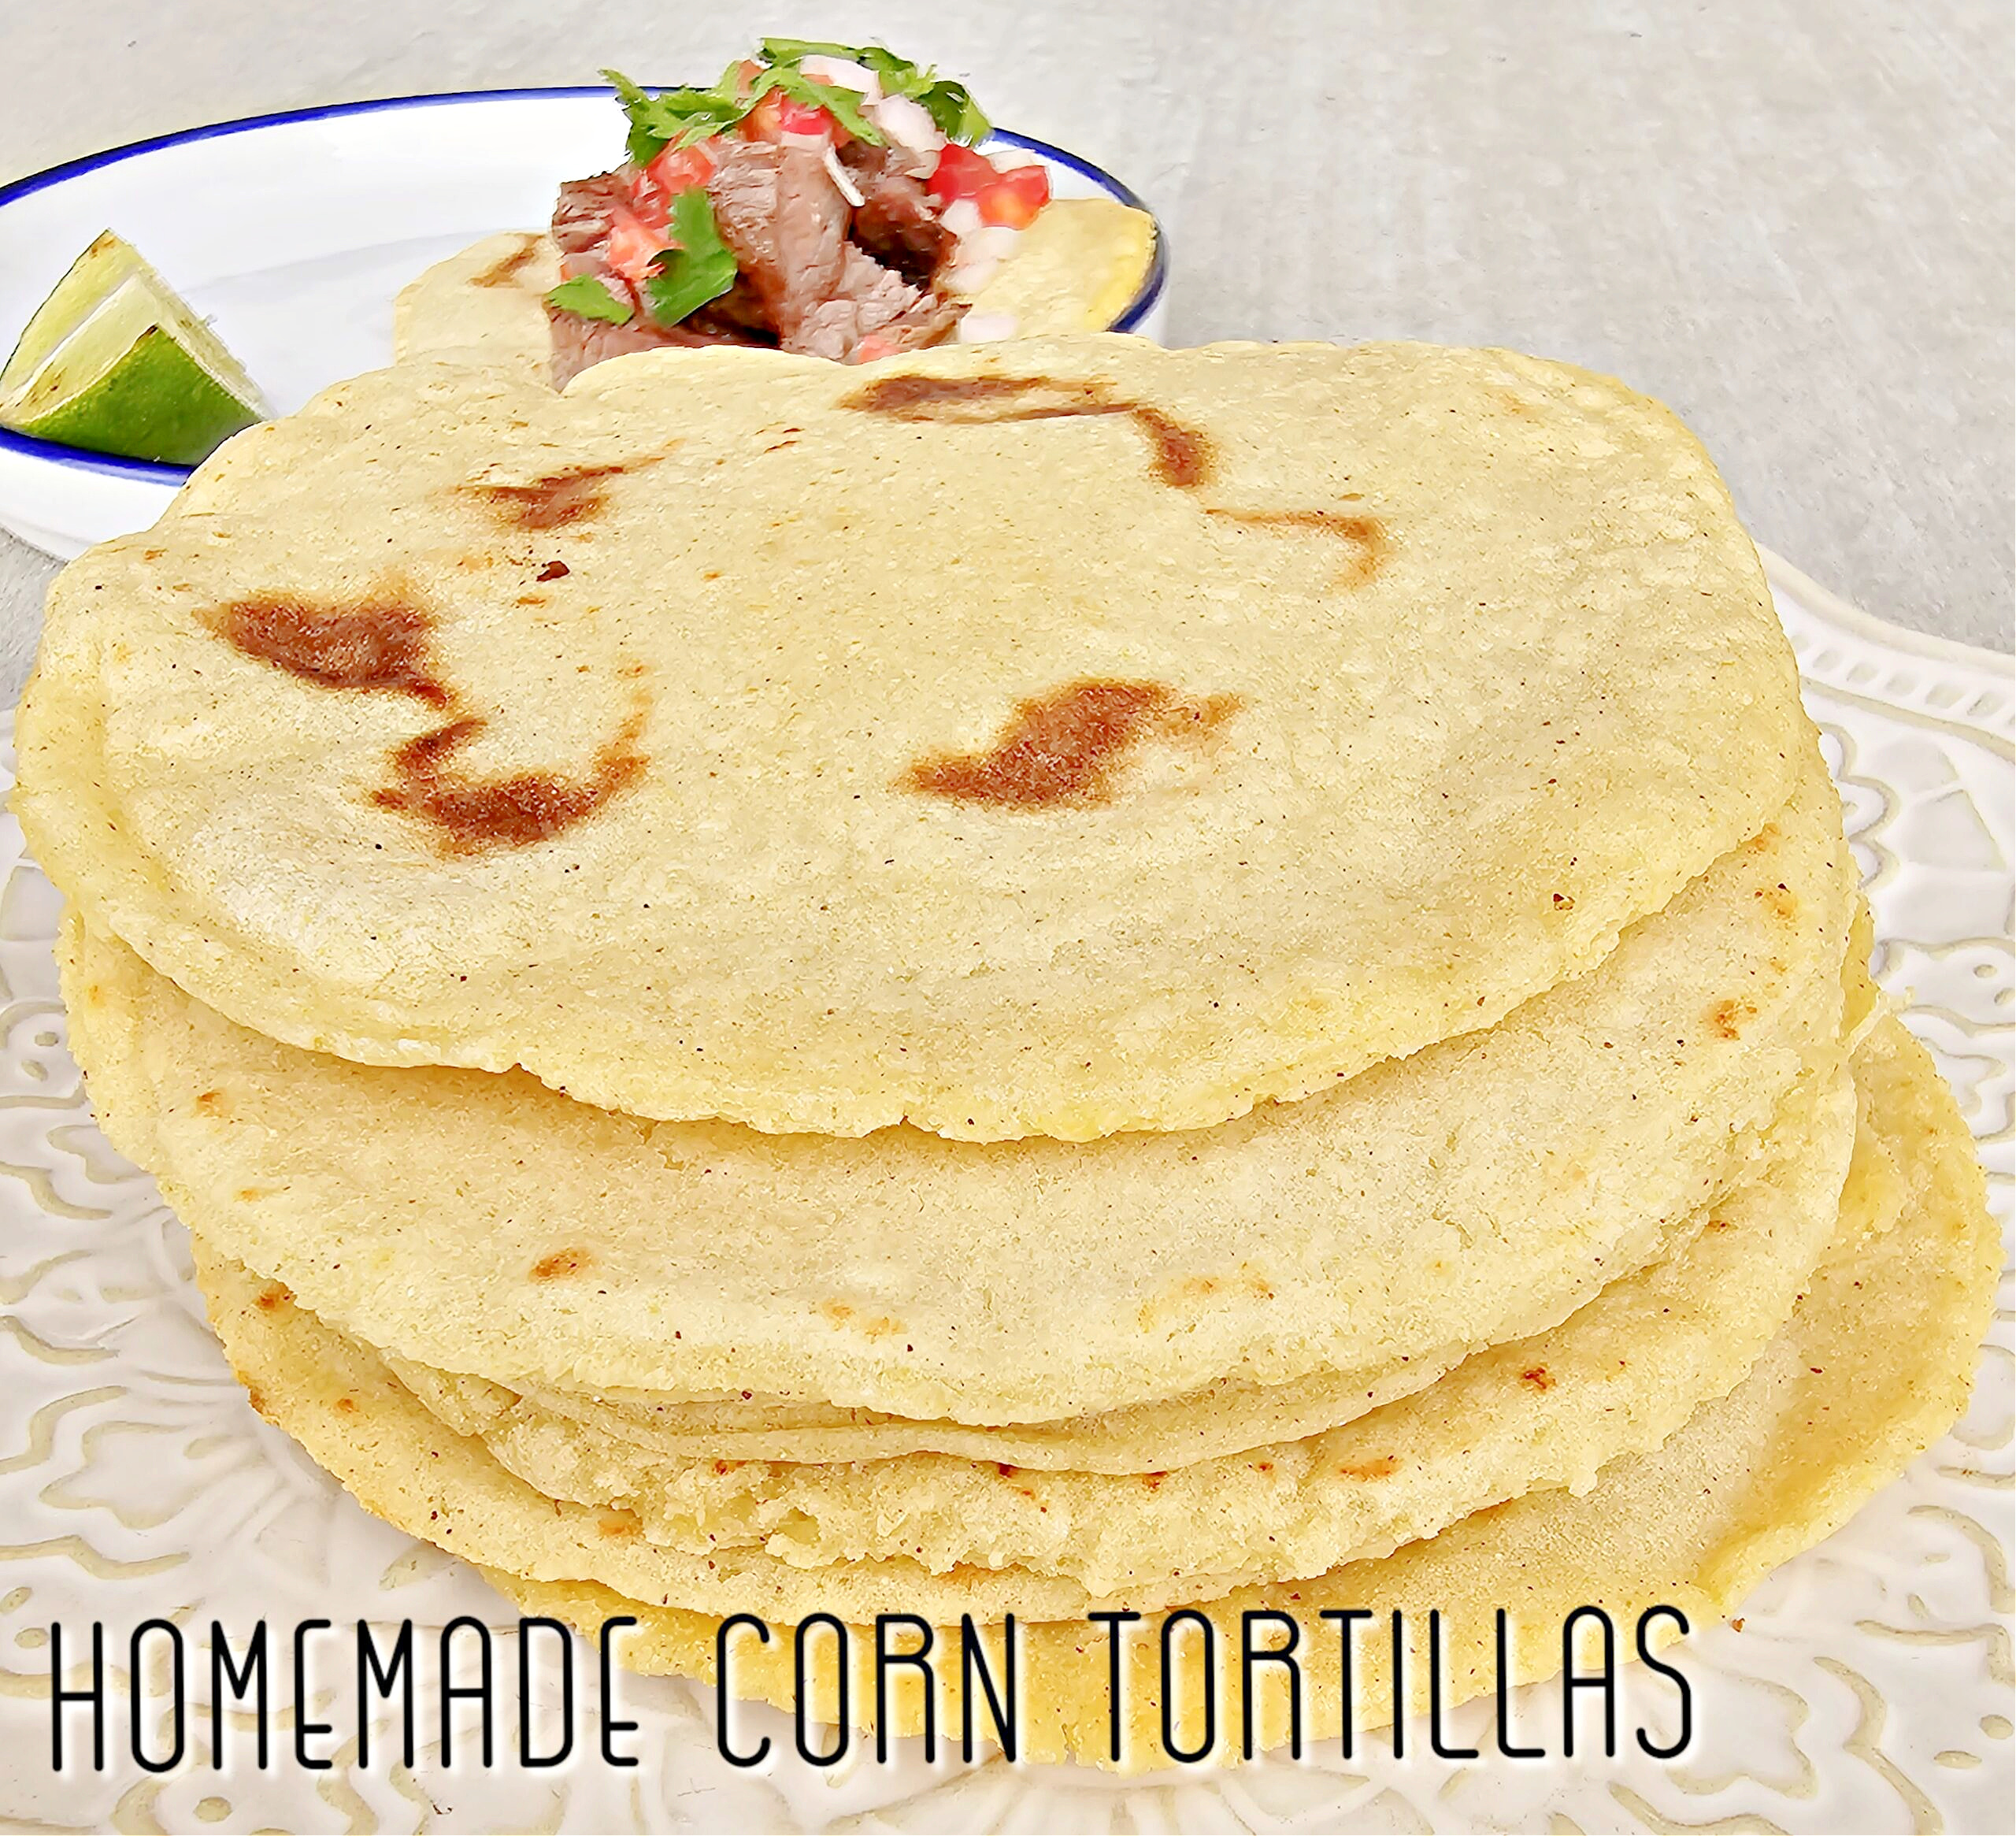 Homemade Corn Tortillas #corntortillas #homemade #tacos #mexicanfood